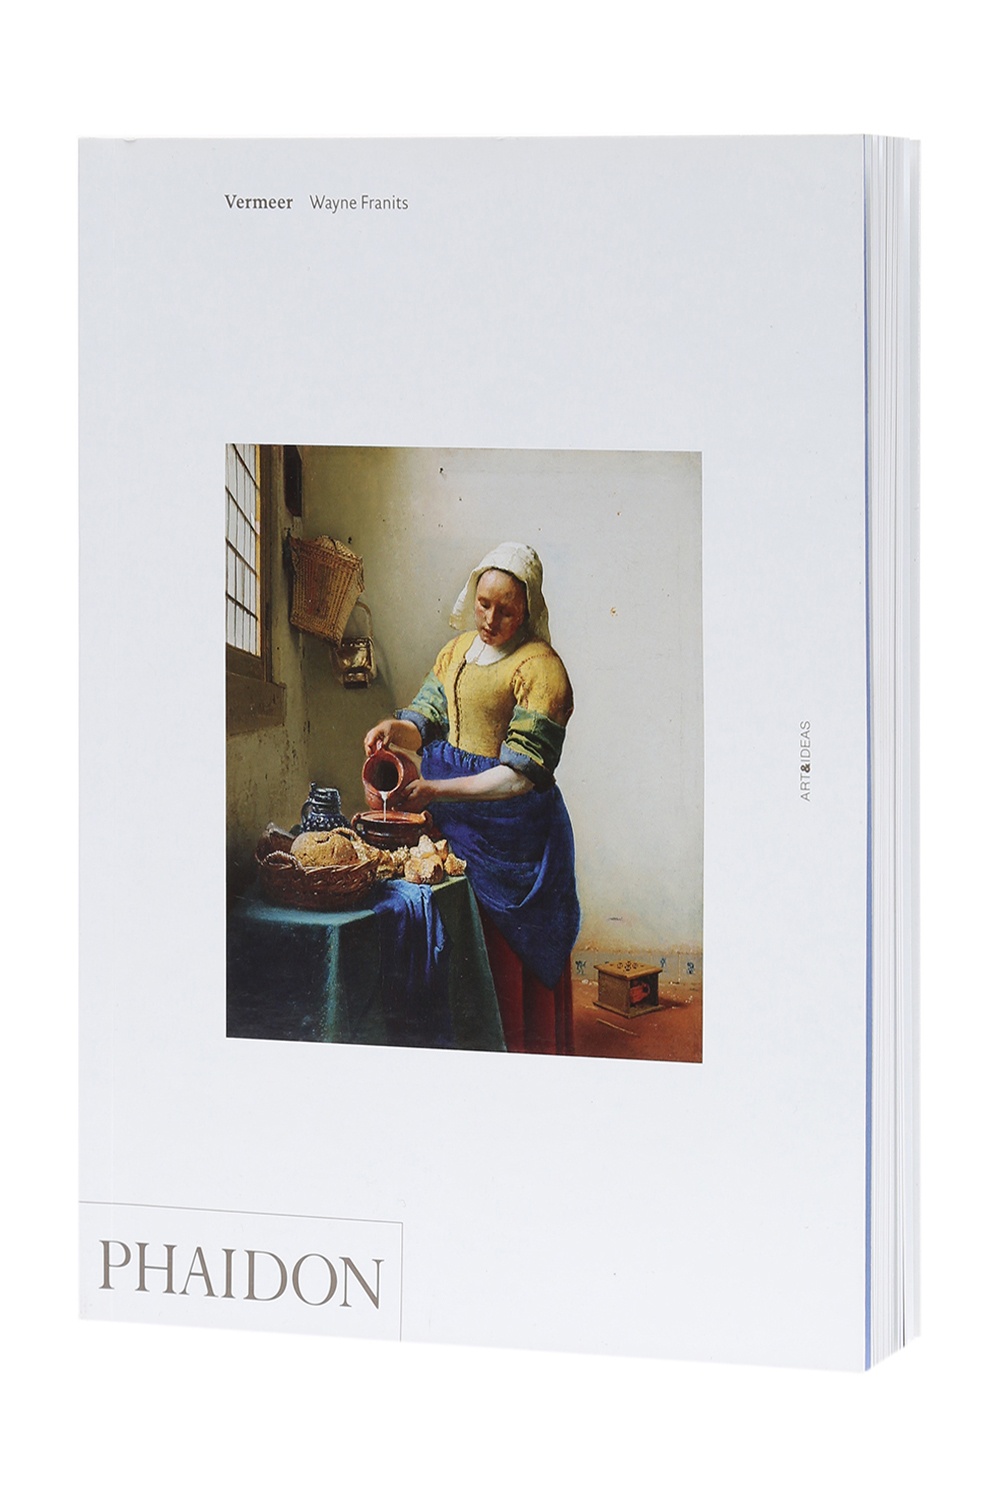 'Vermeer' book